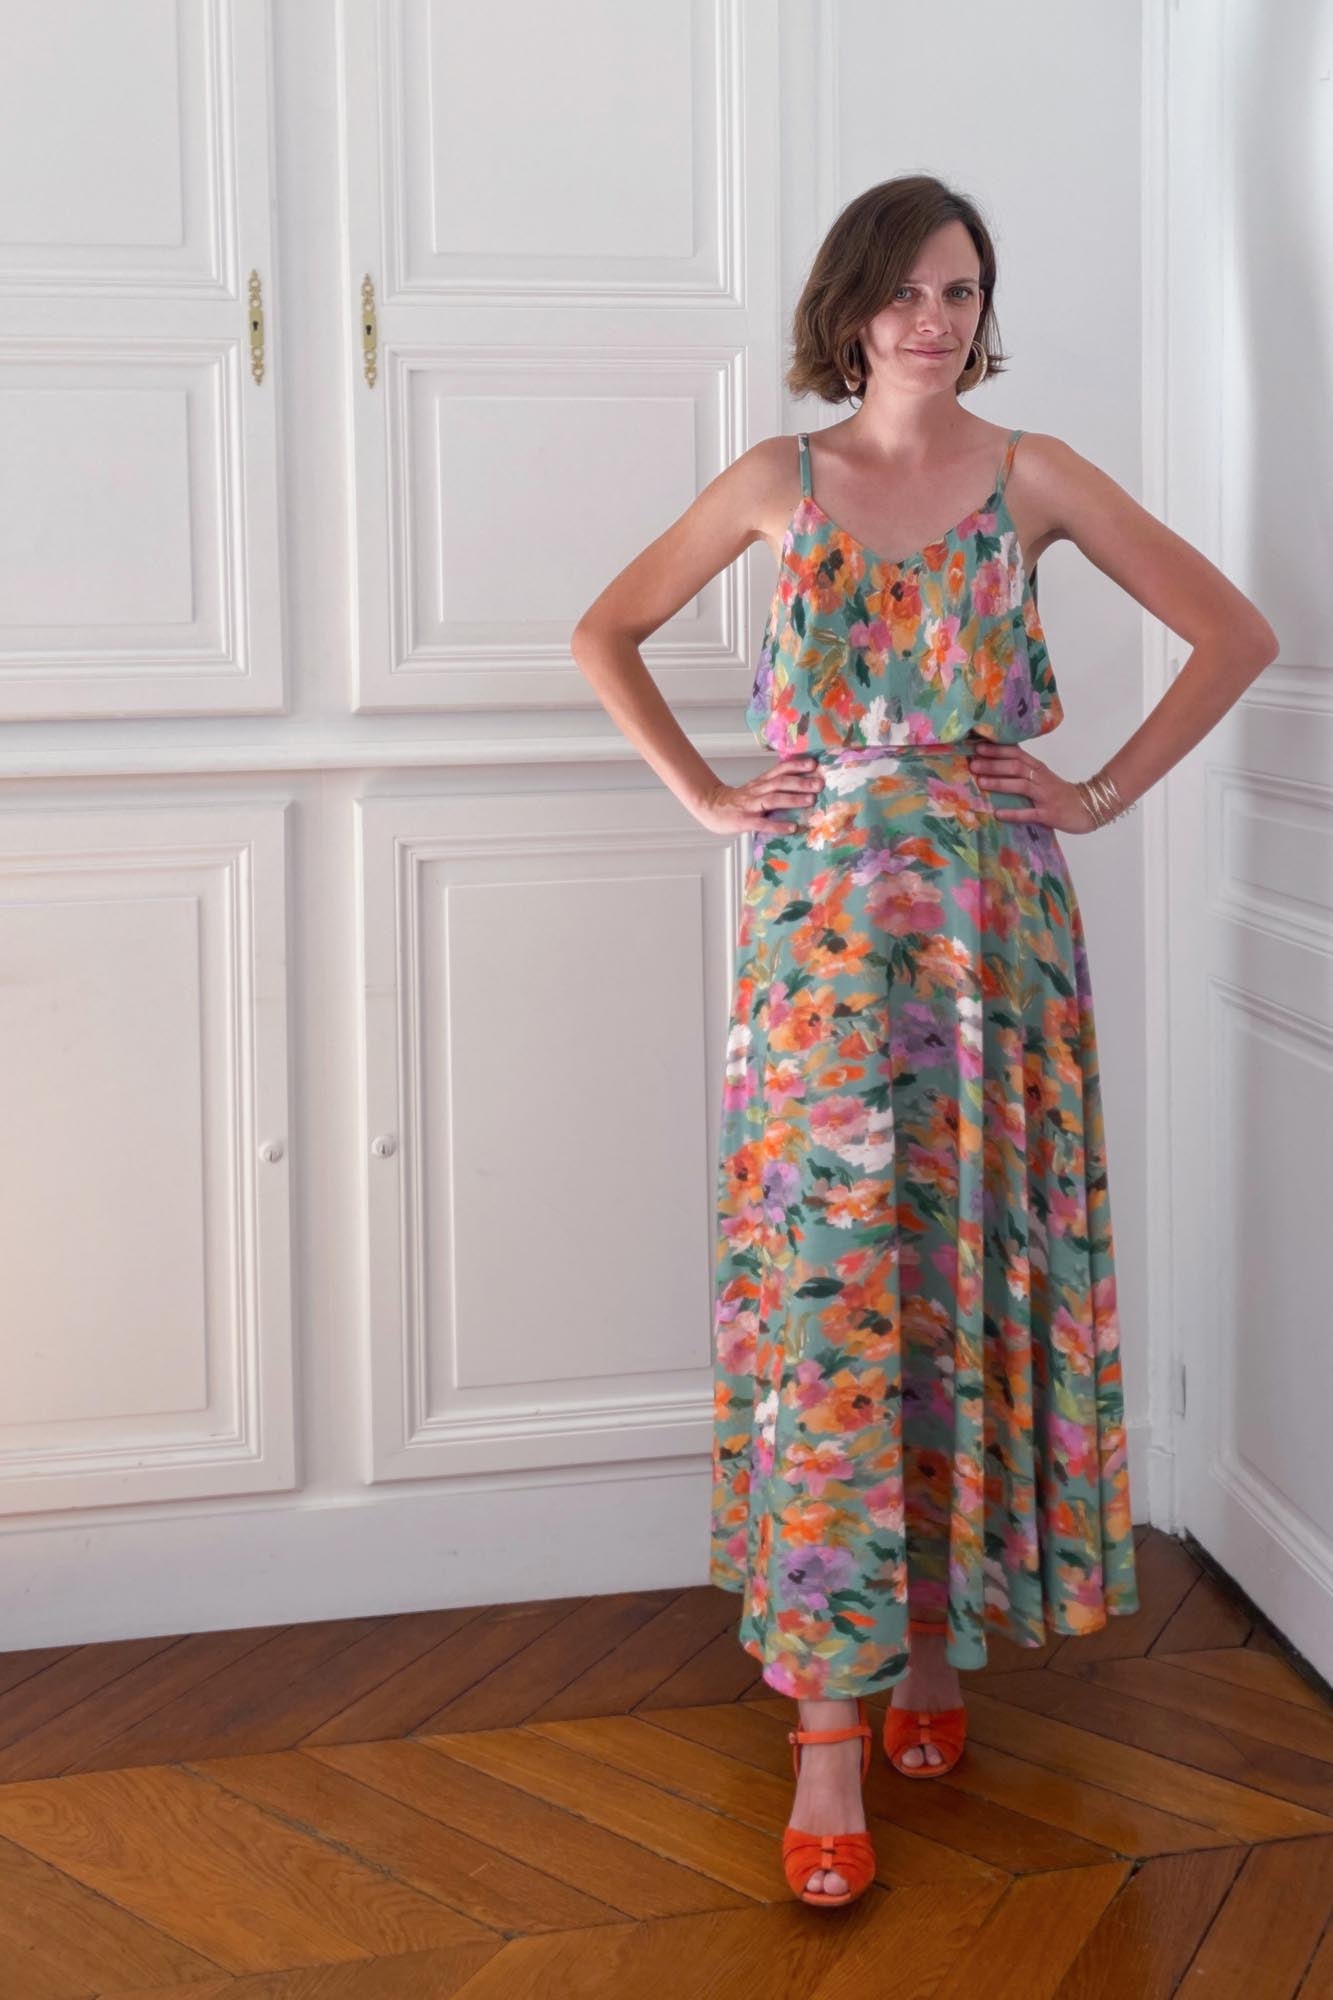 Coudre une robe d'invitée à un mariage avec les patrons à personnaliser Caraco et Jupe demi-cercle par Atelier Charlotte Auzou